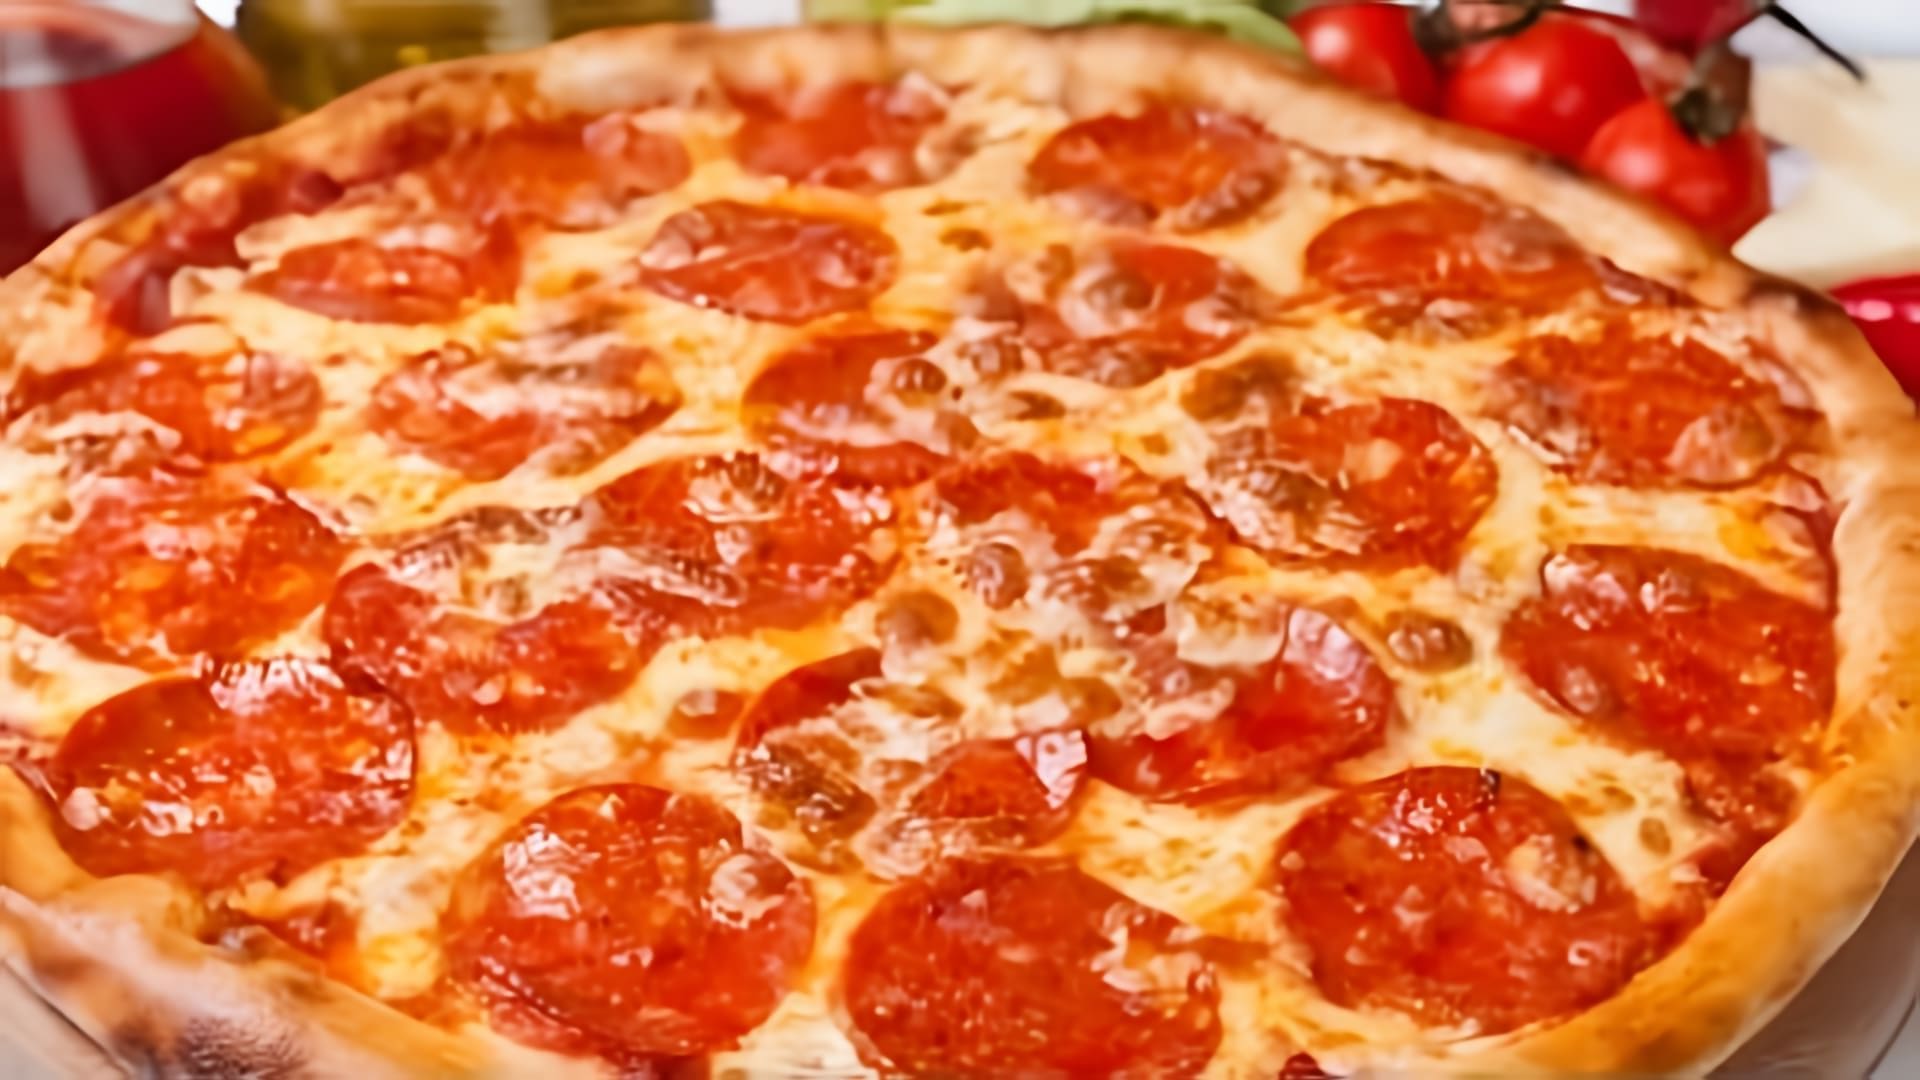 "Самая простая рецепт но очень вкусная и мягкая пицца как в Италии" - это видео-ролик, который демонстрирует процесс приготовления вкусной итальянской пиццы